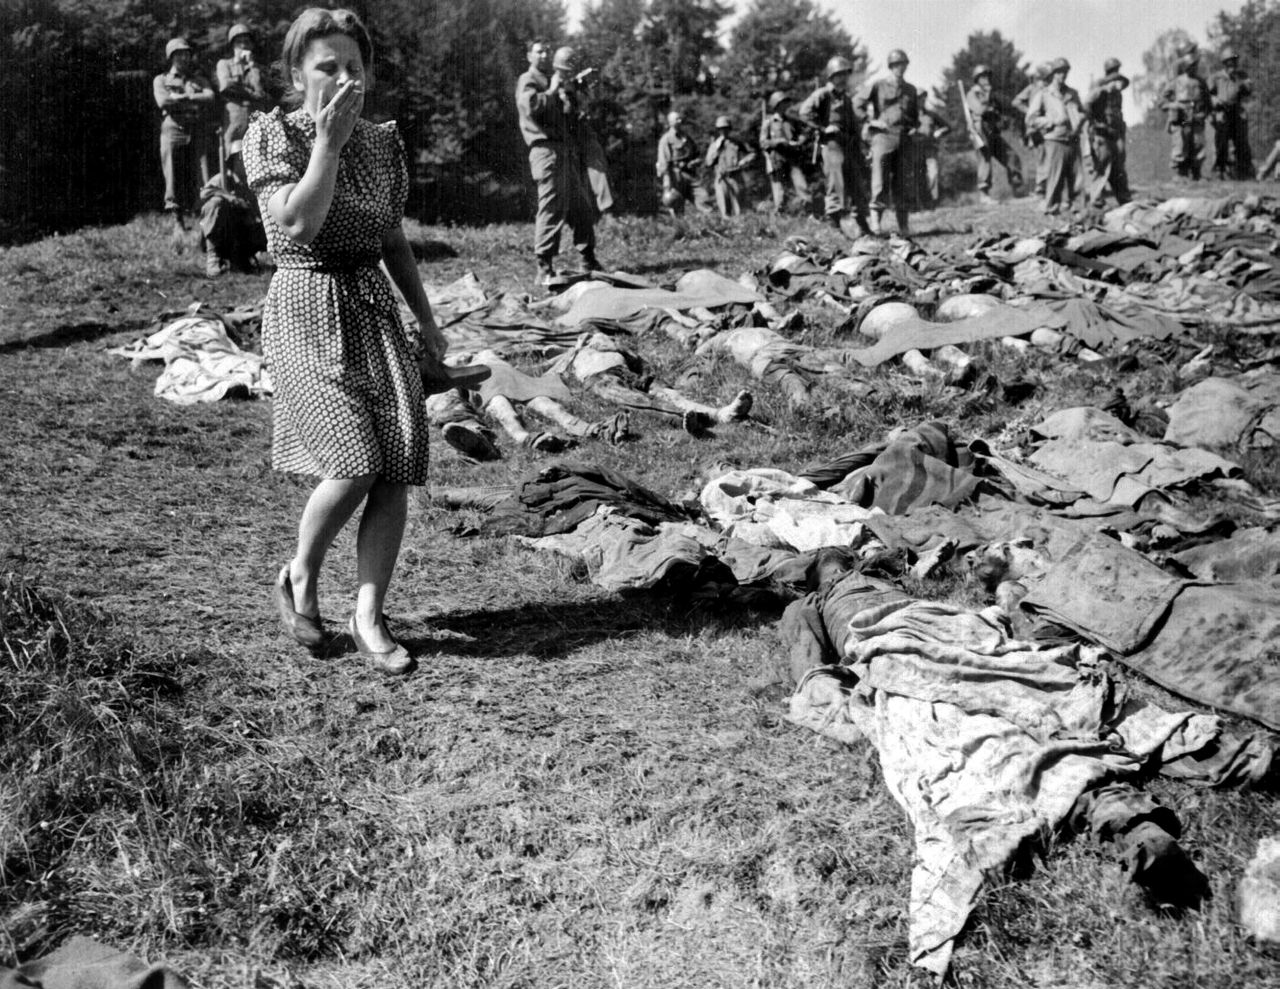 Im bayerischen Nammering betrachtet die Bevölkerung mit Scham und Entsetzen hunderte Leichen von Häftlingen des KZ Dachau. Das Foto zeigt viele Leichen, die nebeneinander auf dem Boden liegen und mit Stoffstücken teilweise bedeckt worden sind. Neben den Leichen steht eine Frau, die mit einer Hand ihre Nase und ihren Mund bedeckt. Im Hintergrund stehen Soldaten und betrachten die Frau und die Leichen.